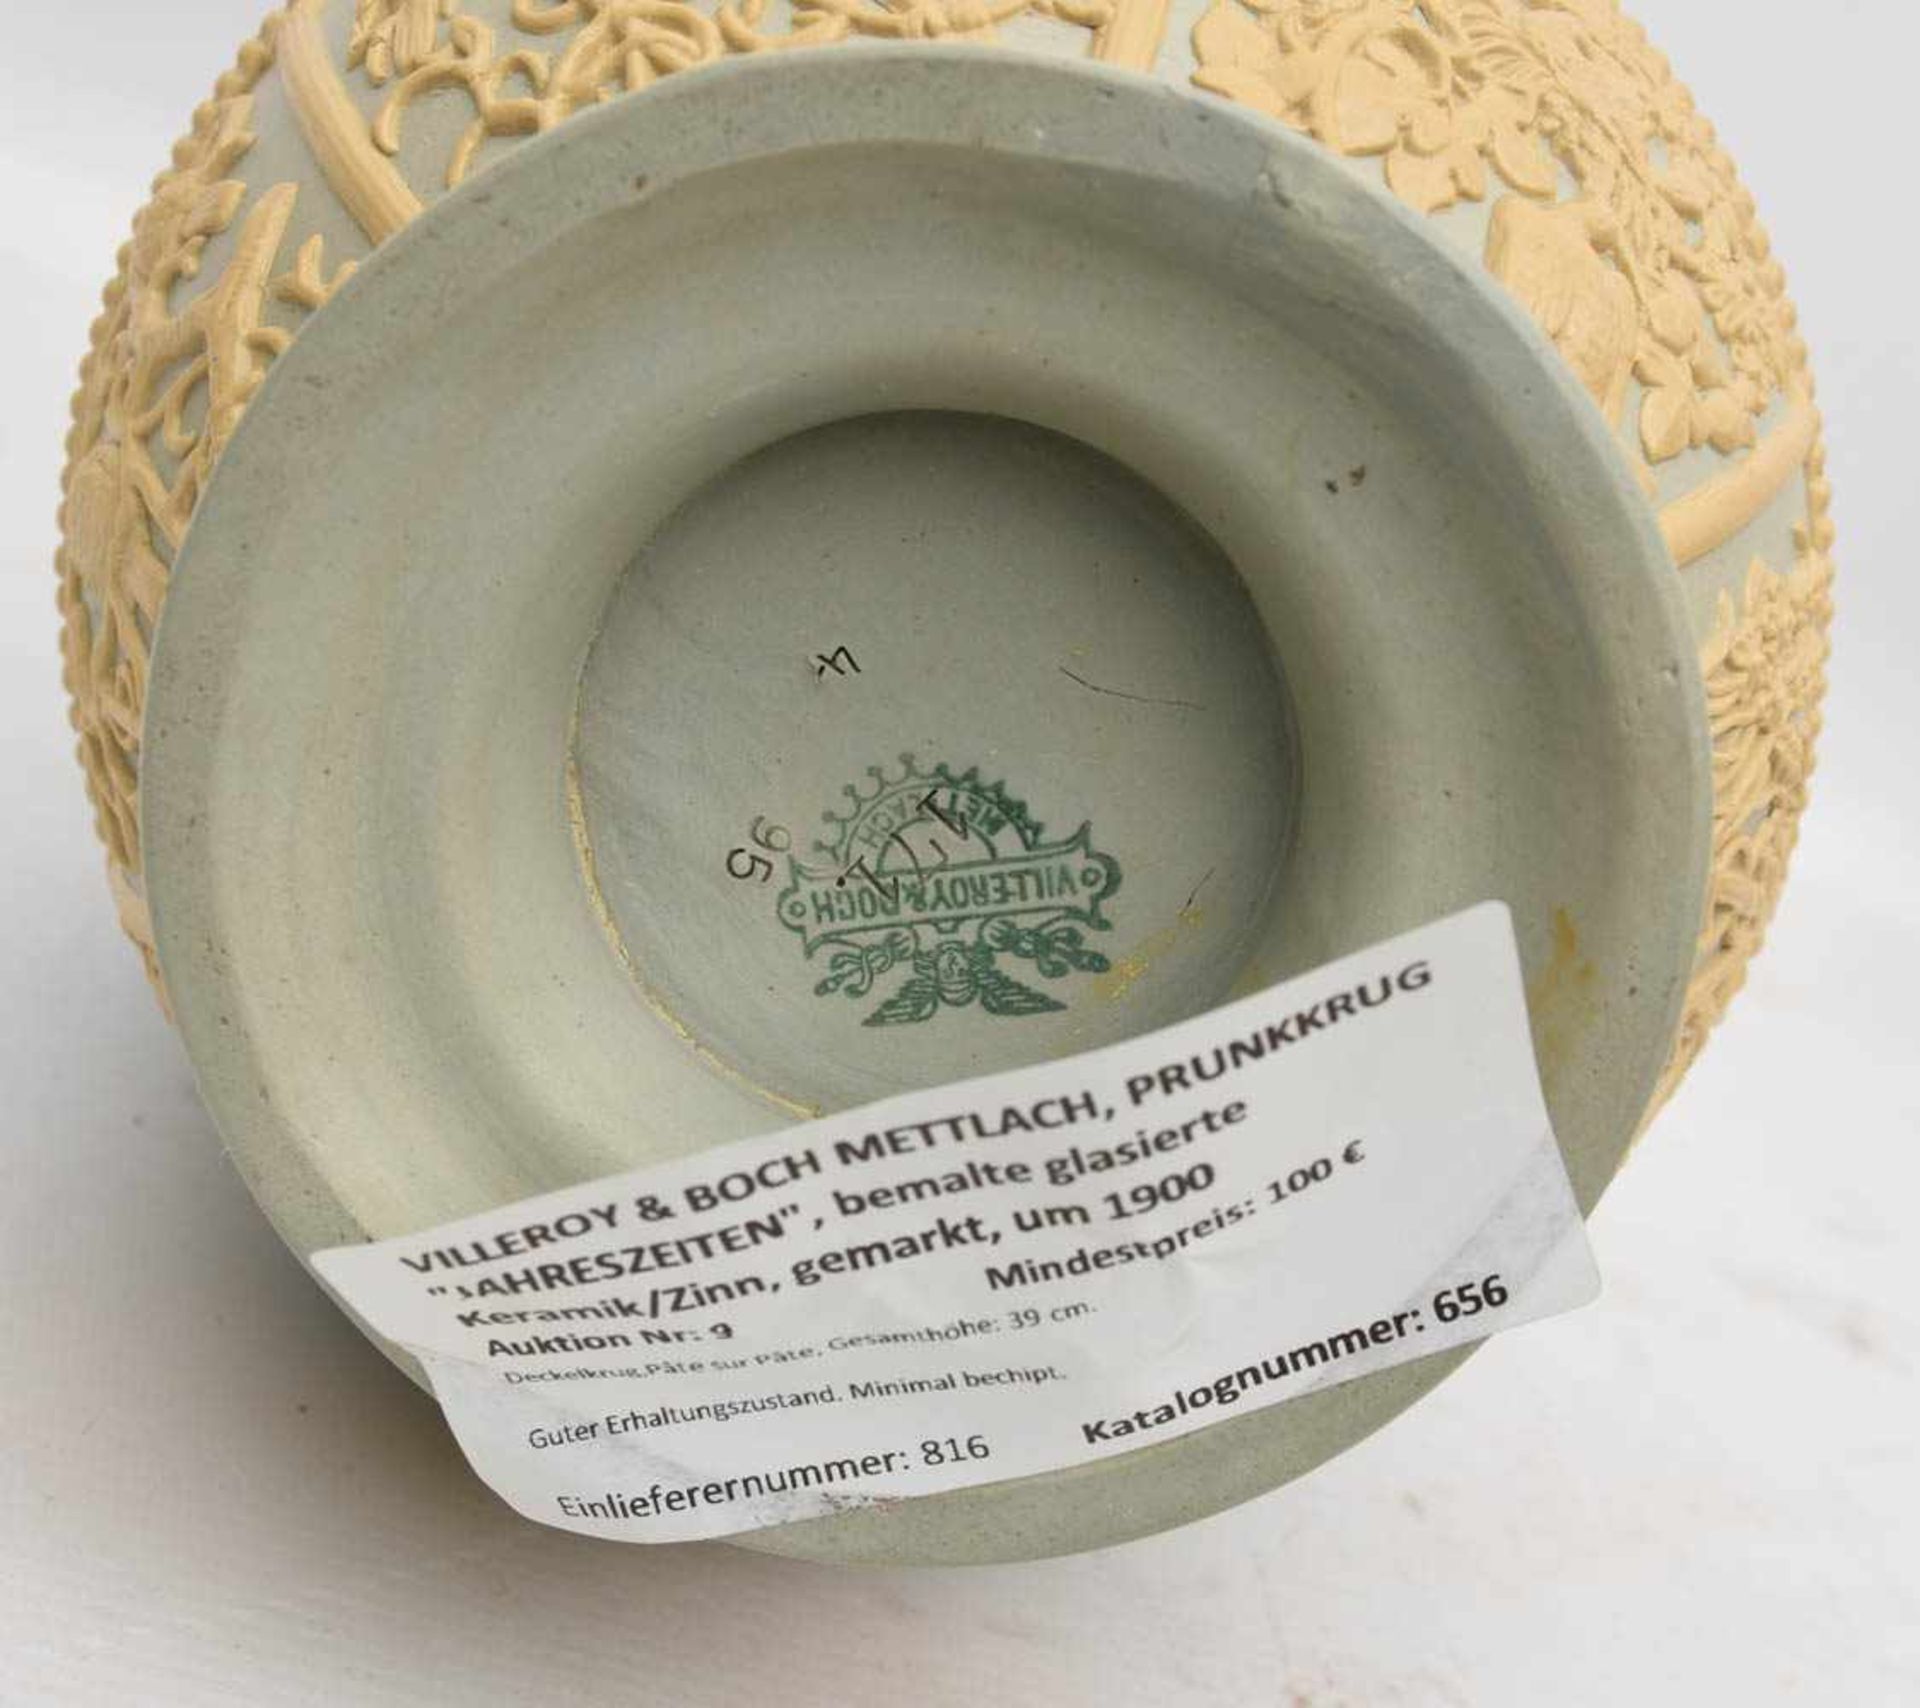 VILLEROY & BOCH METTLACH, PRUNKKRUG "JAHRESZEITEN", bemalte glasierte Keramik/Zinn, gemarkt, um - Bild 7 aus 7